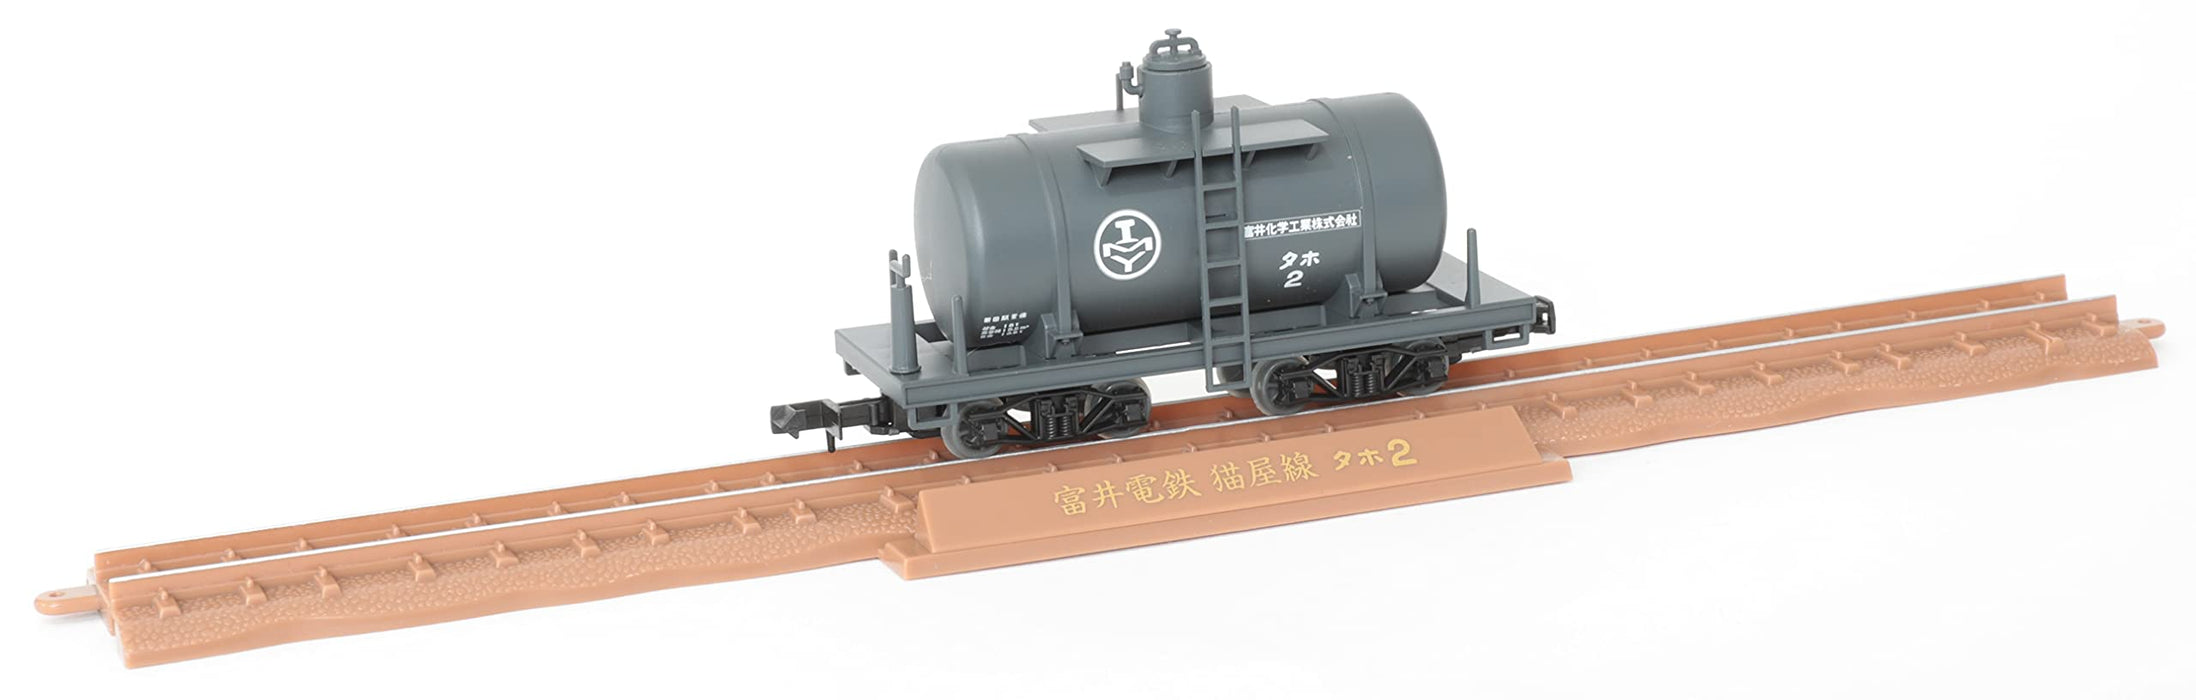 Tomytec Railway Collection - Voie étroite 80 Ligne Nekoya Ensemble de 2 voitures Locomotive électrique et wagon-citerne Fournitures de diorama